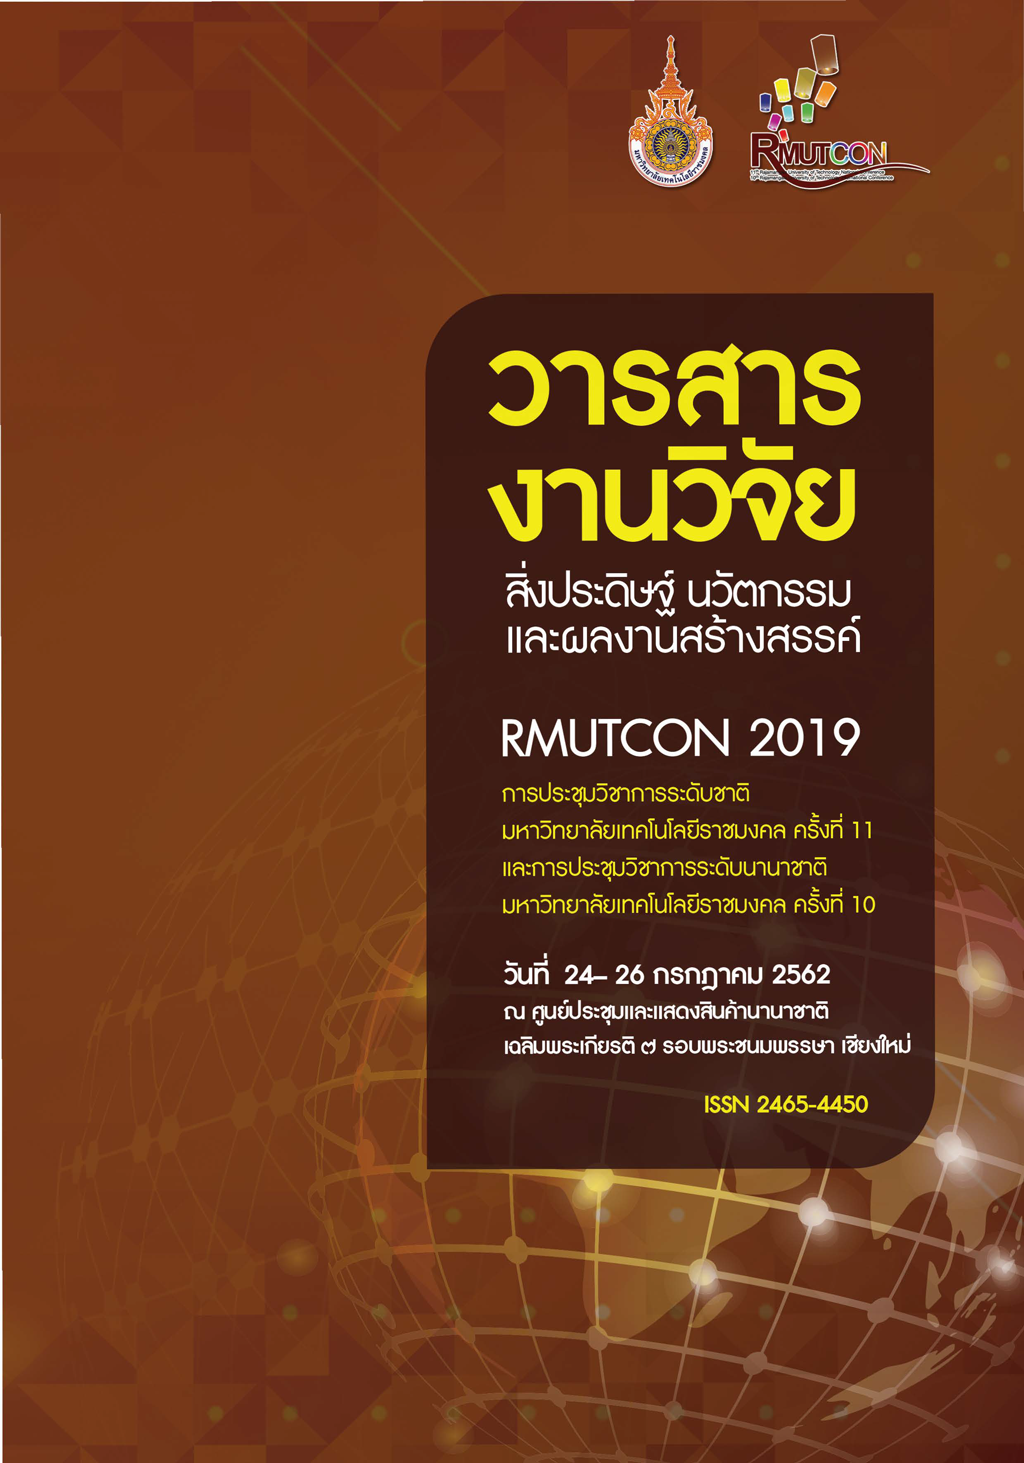 RMUTCON 2019